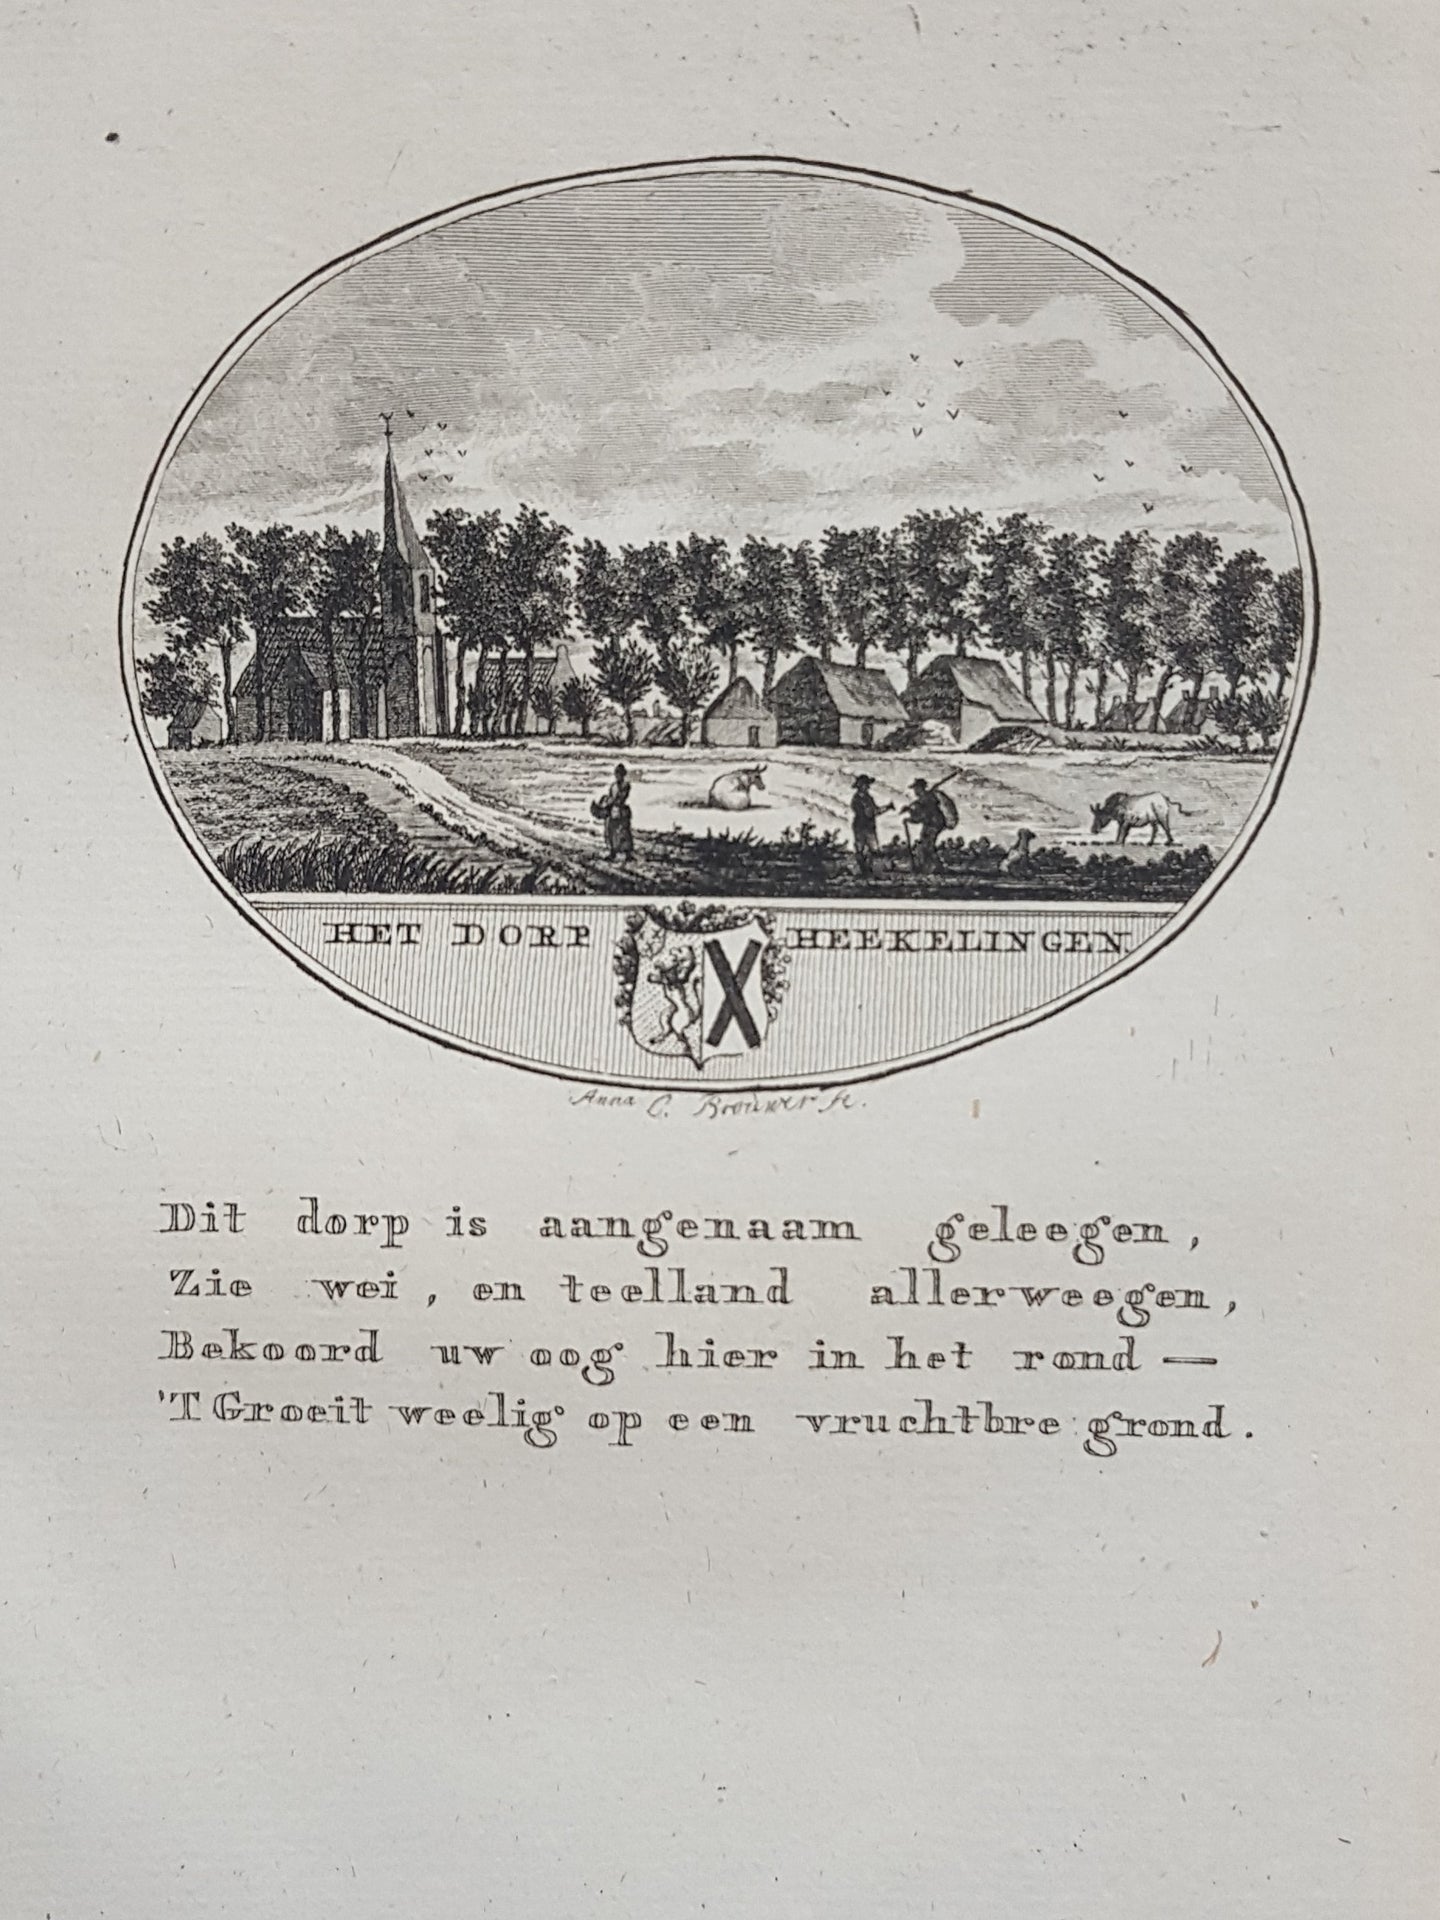 HEKELINGEN - Van Ollefen & Bakker - 1793